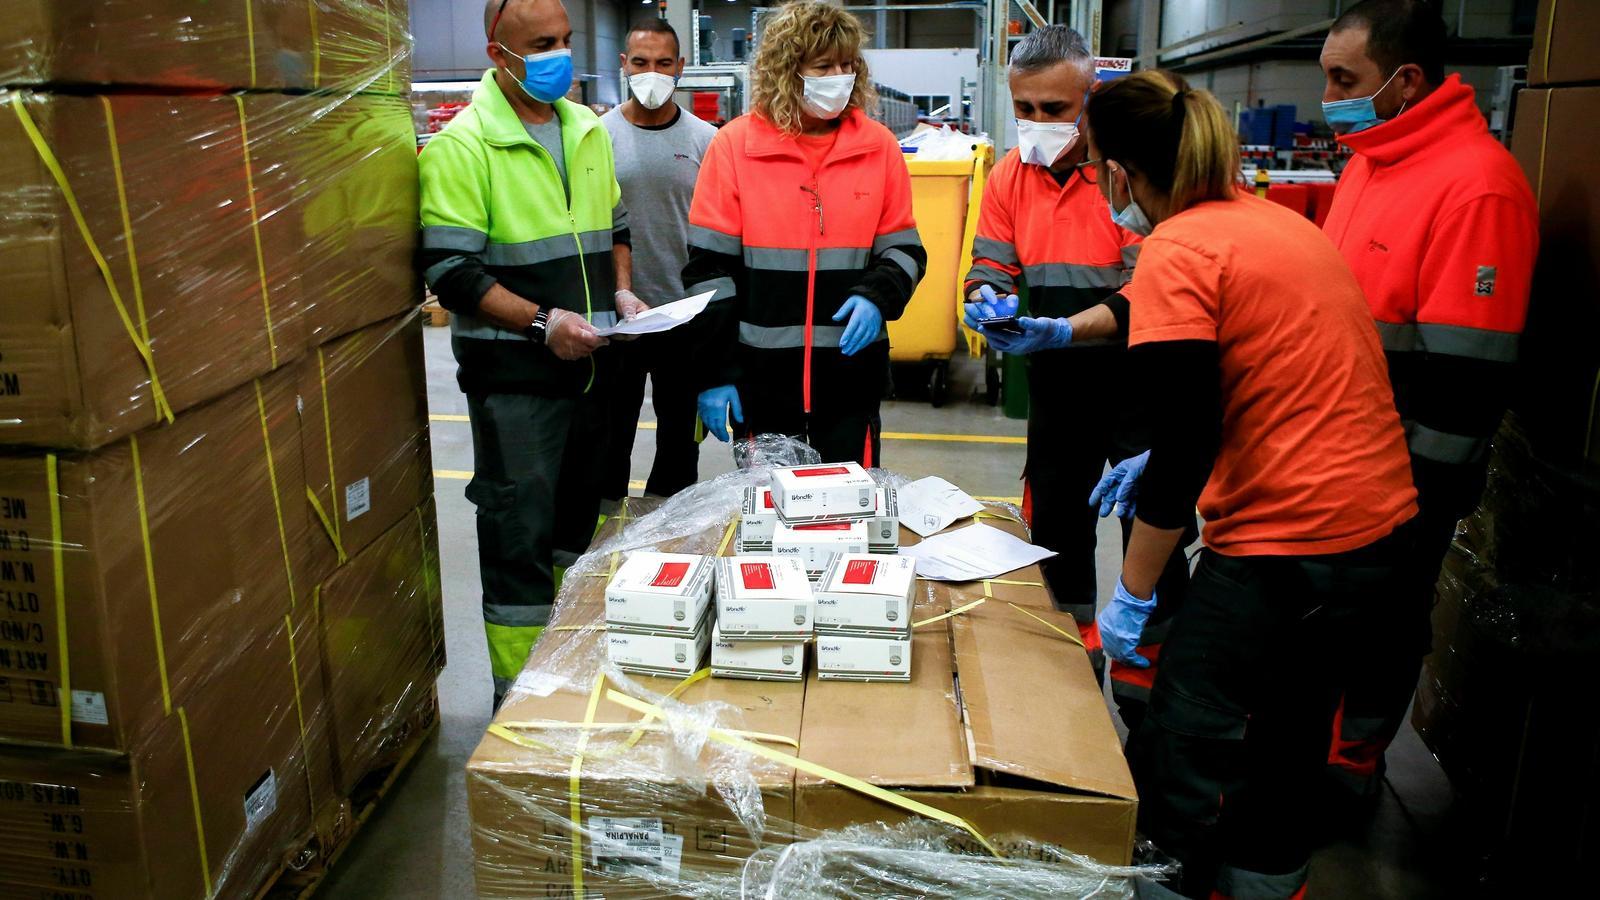 Treballadors de l'empresa Logaritme Servei Logistics IAE revisant el material sanitari a punt per ser distribuït a hospitals i residències de Catalunya / QUIQUE GARCÍA / EFE